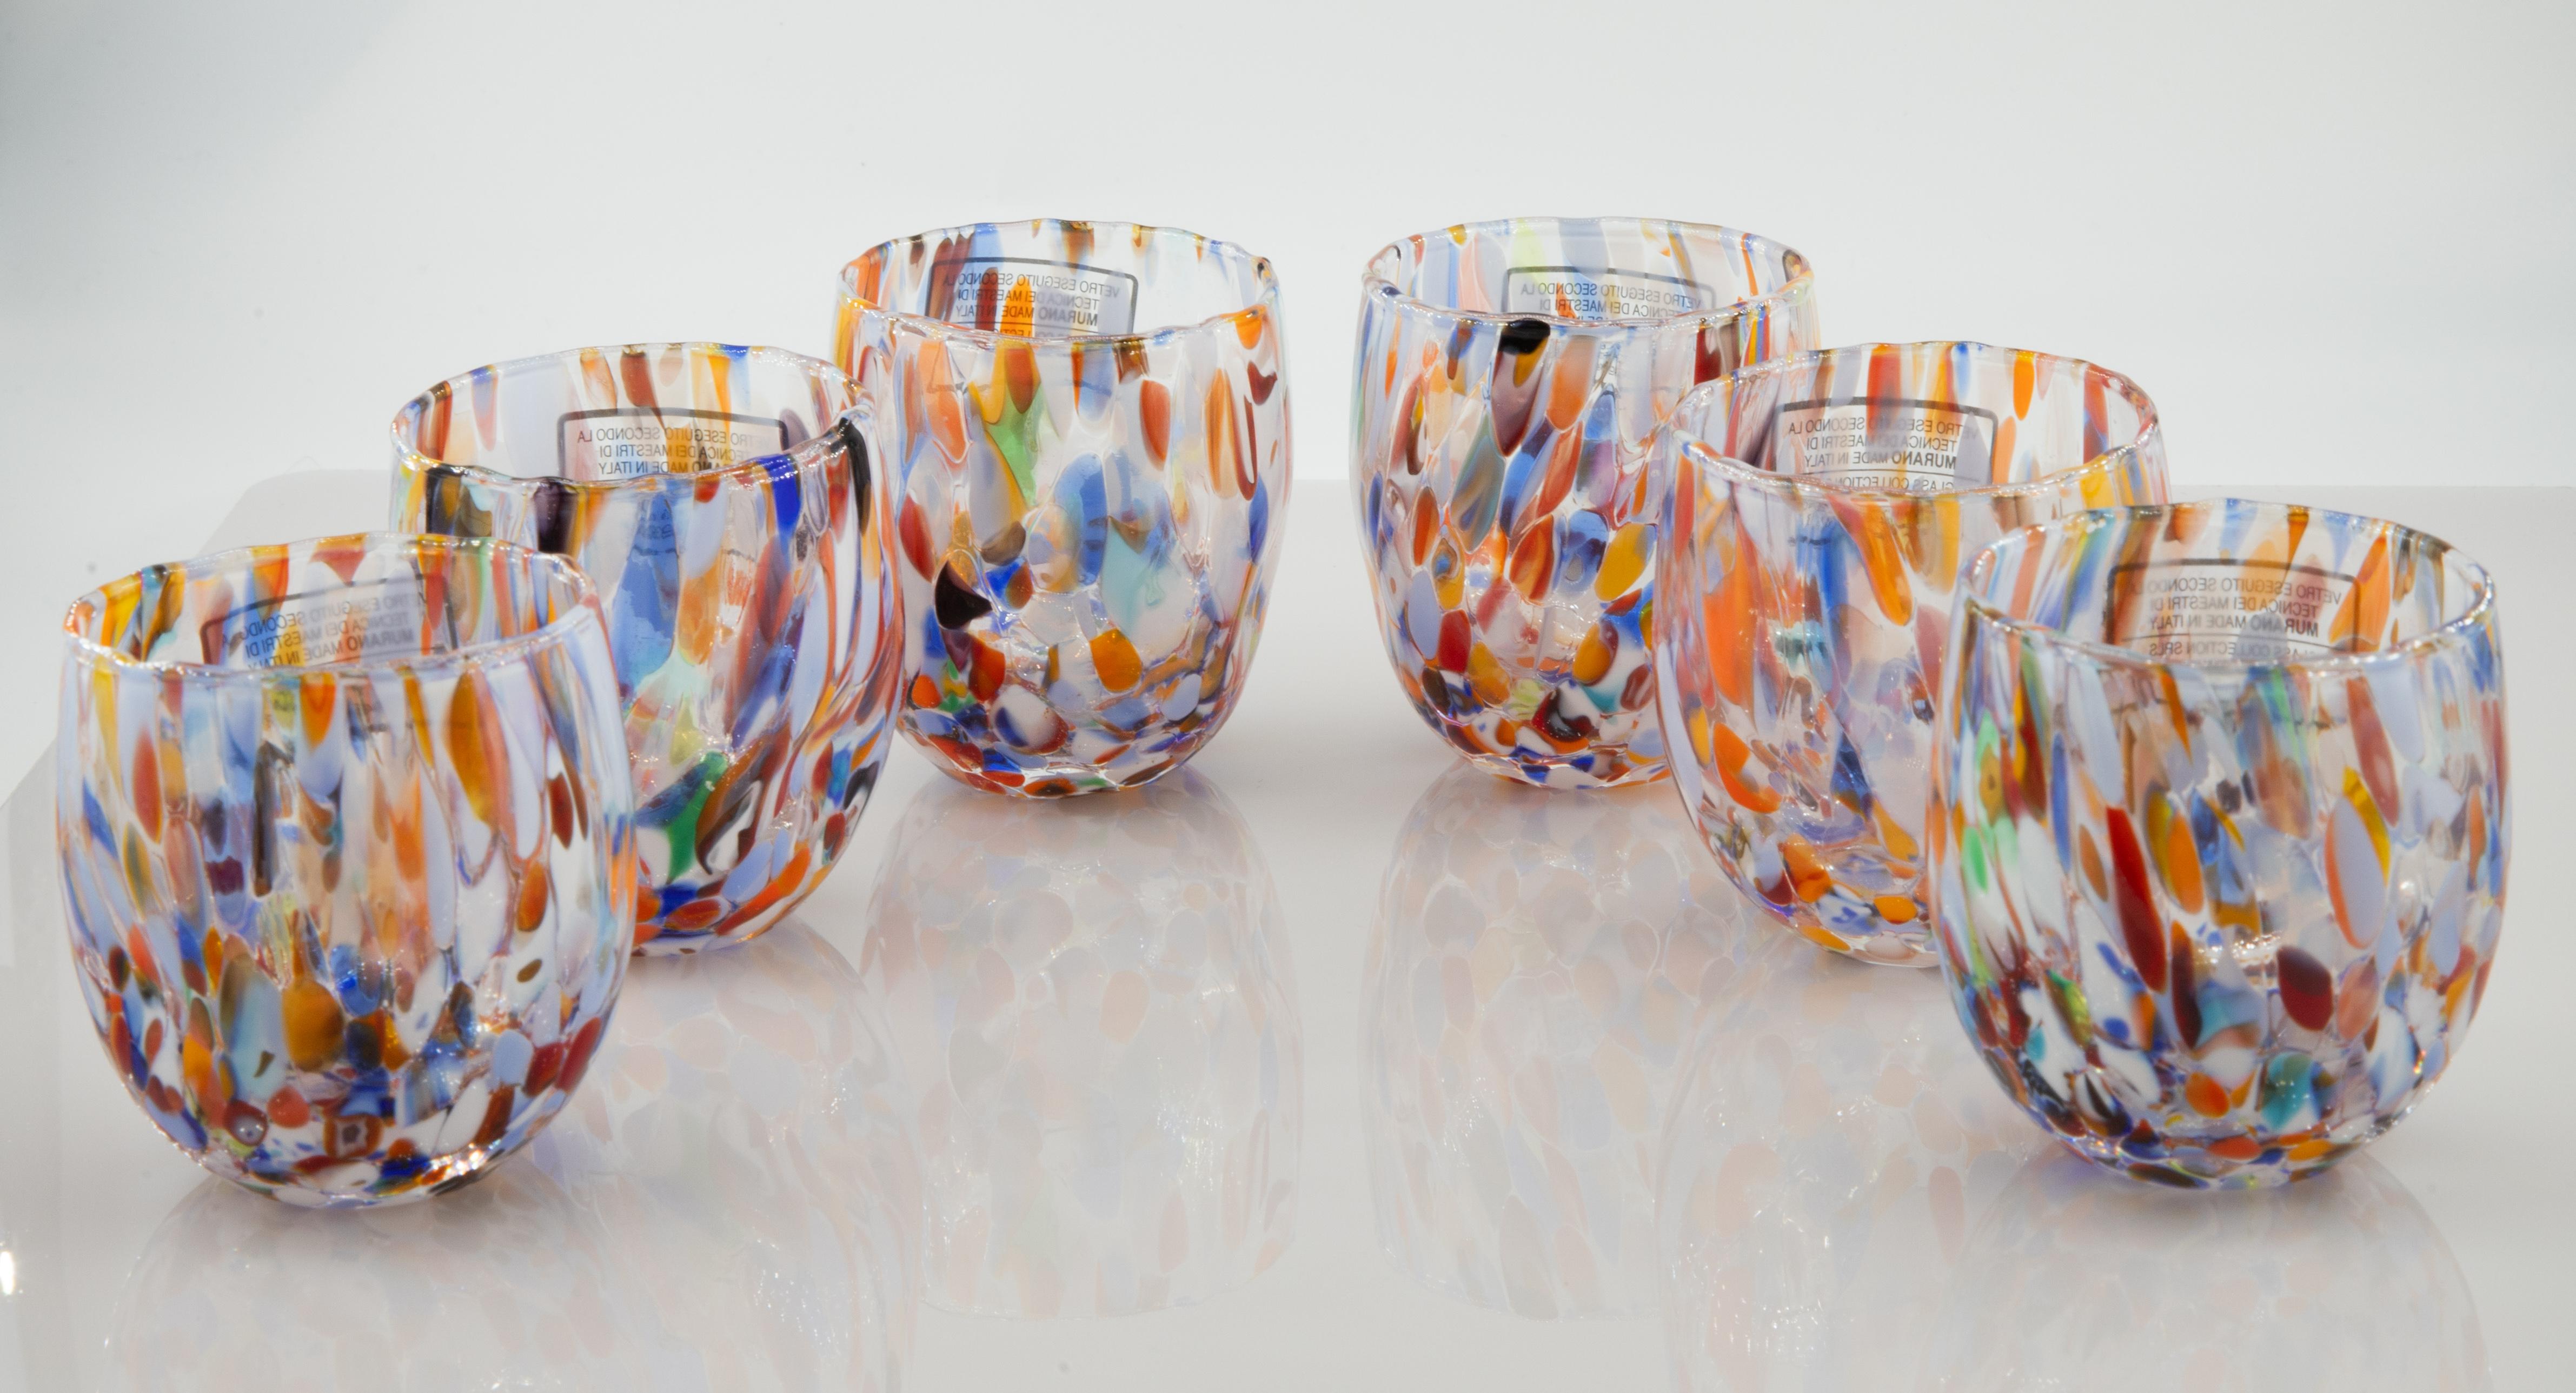 Set von sechs Shot\café Gläser Farbe Millefiori - Murano Glas - Made in Italy.

Diese individuellen Murano-Gläser sind von dem klassischen Murano-Glas 